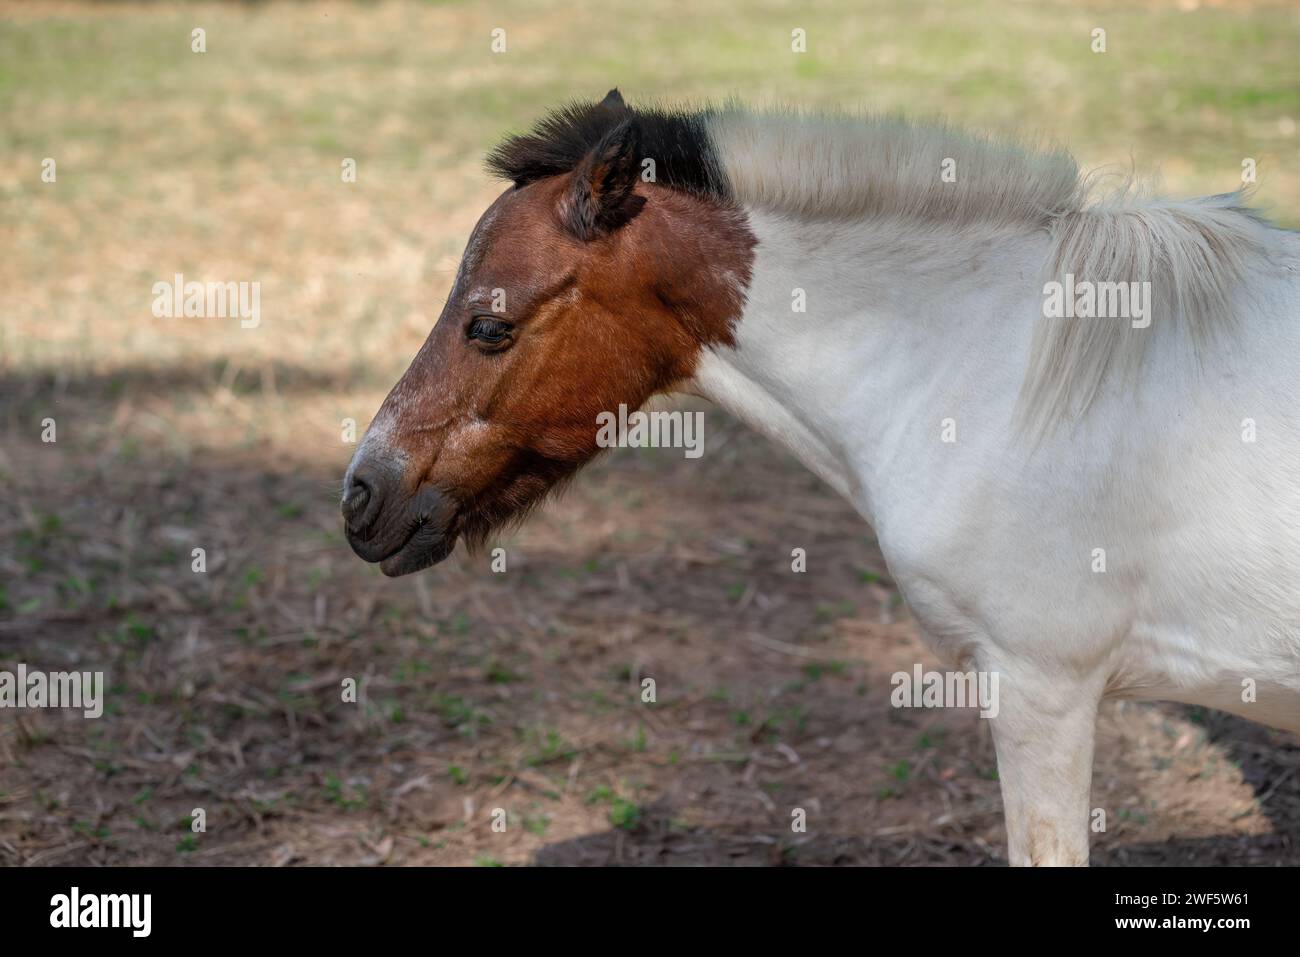 Miniature Horse (Equus ferus caballus) Stock Photo